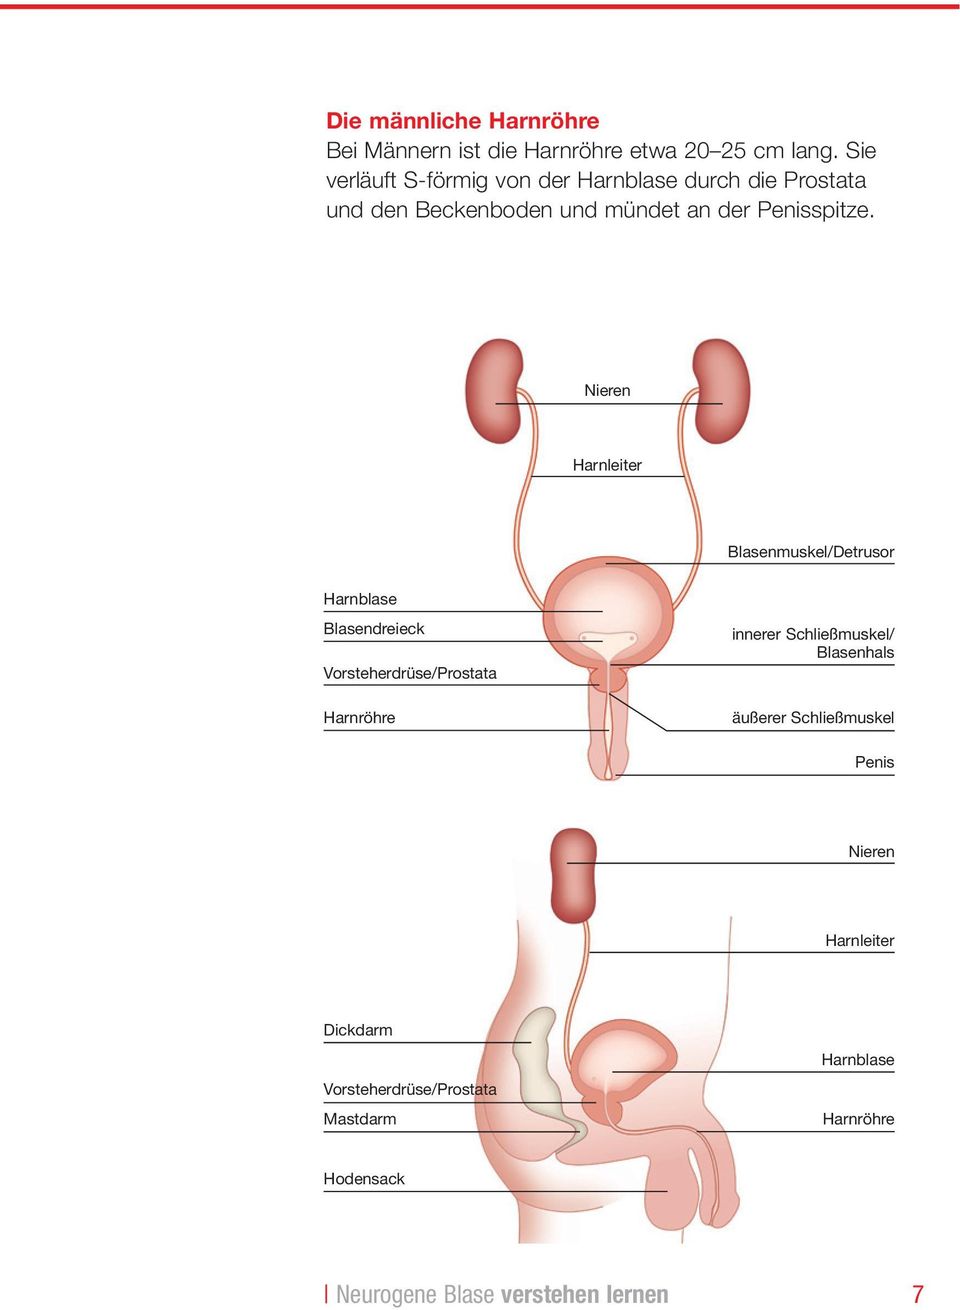 Nieren Harnleiter Blasenmuskel/Detrusor Harnblase Blasendreieck Vorsteherdrüse/Prostata Harnröhre innerer